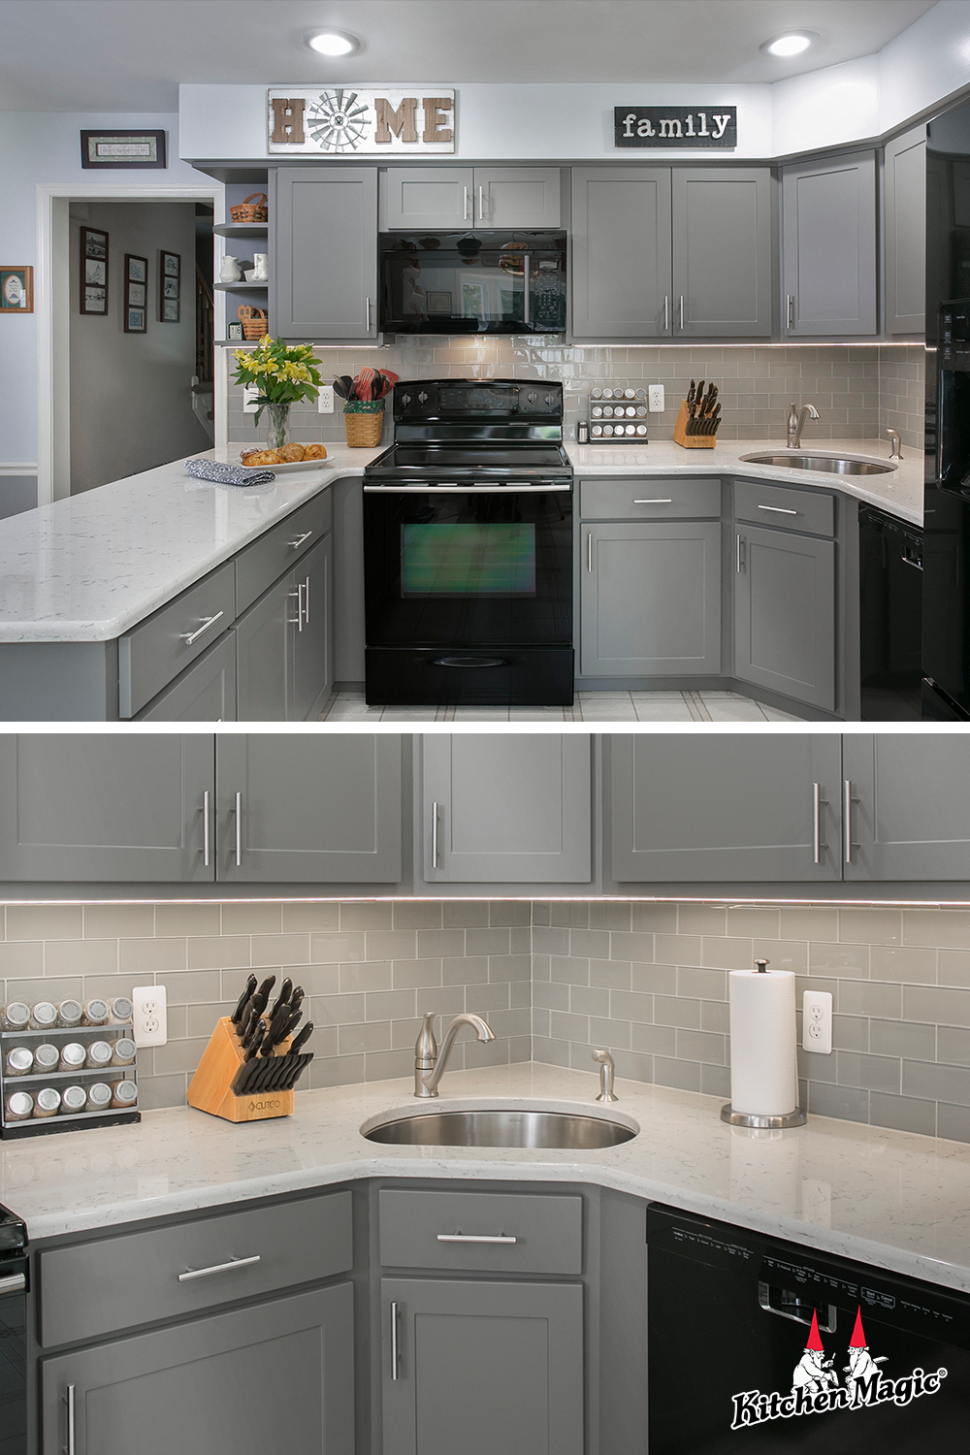 4 Gray Kitchens ideas in 4  kitchen design, kitchen, kitchen  - grey kitchen ideas pinterest